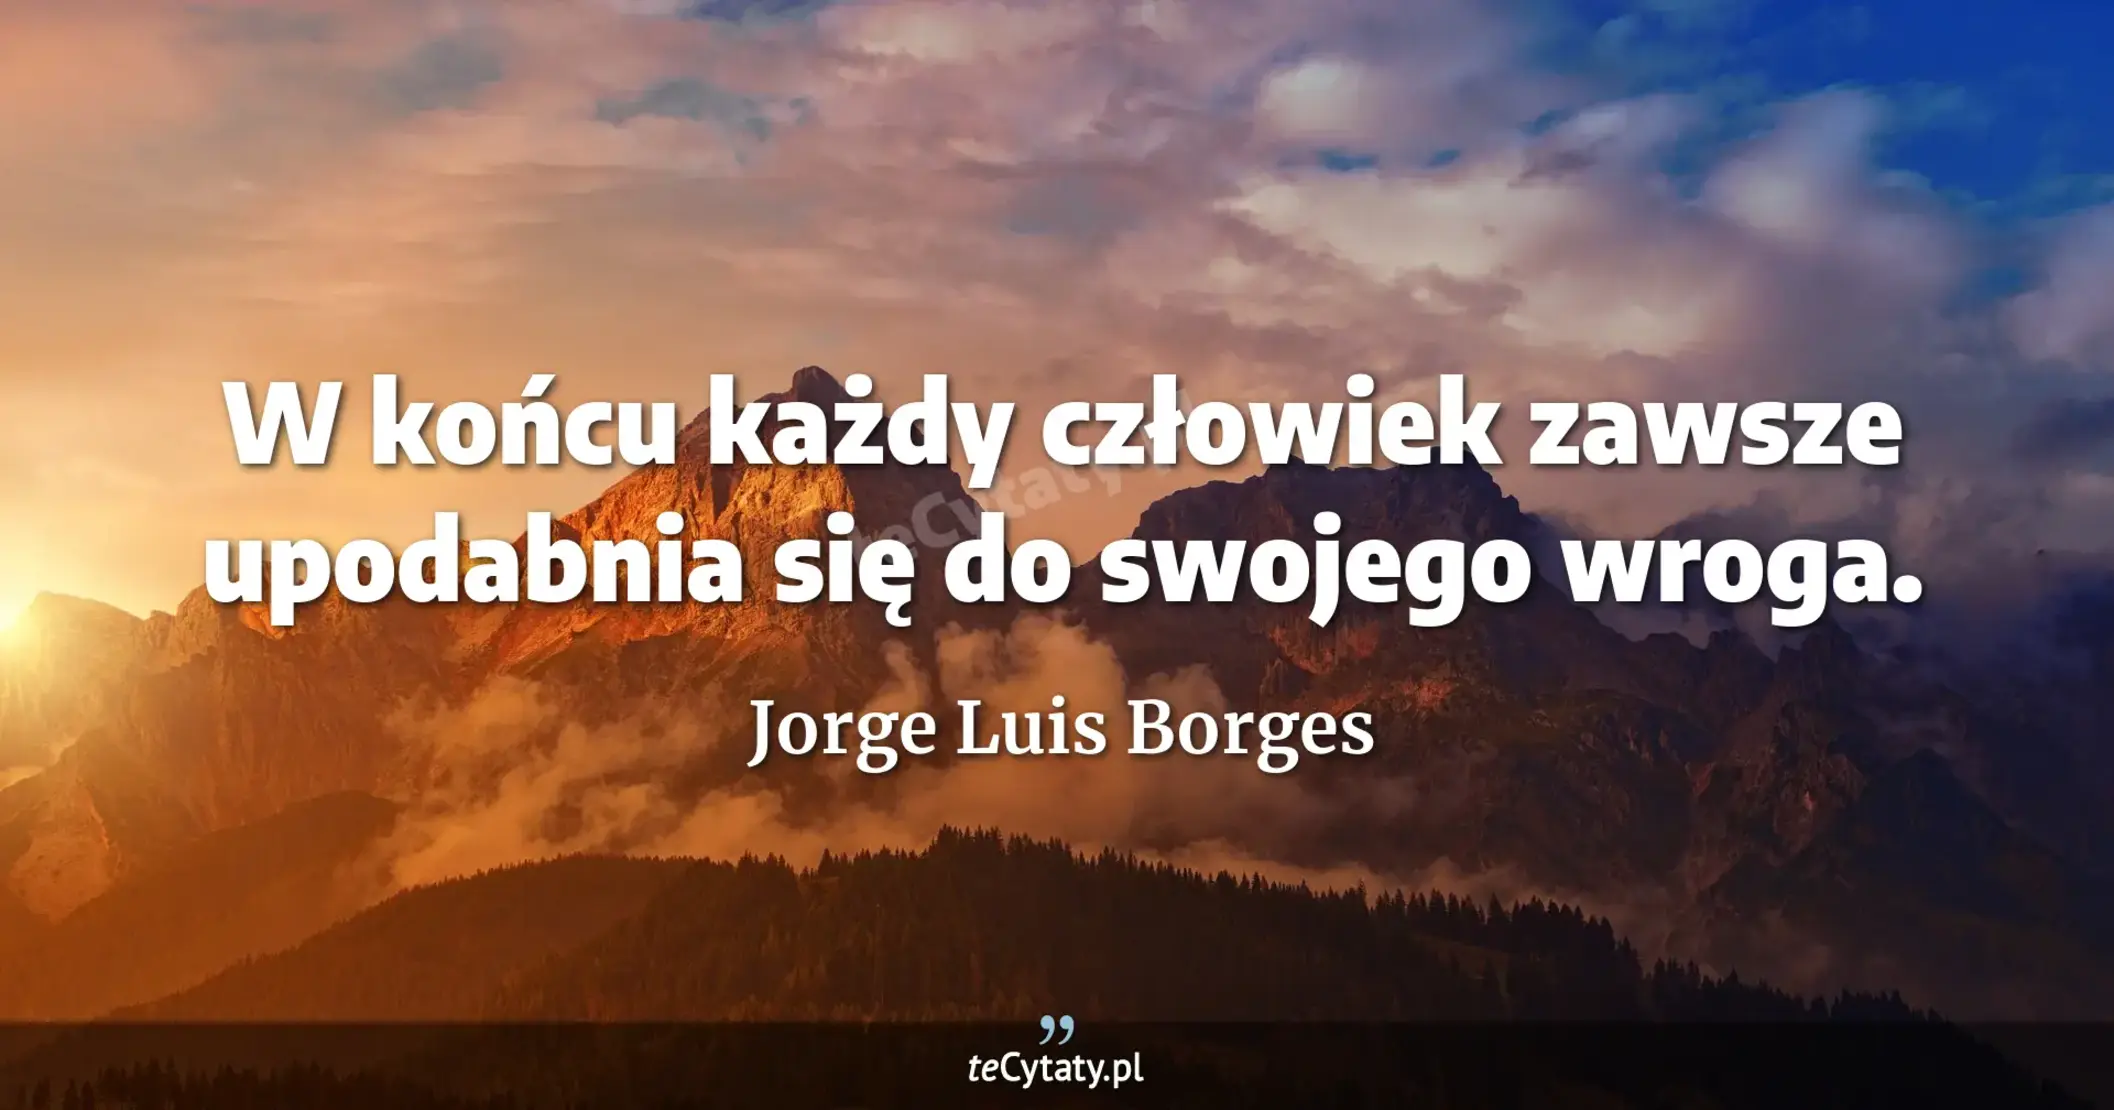 W końcu każdy człowiek zawsze upodabnia się do swojego wroga. - Jorge Luis Borges